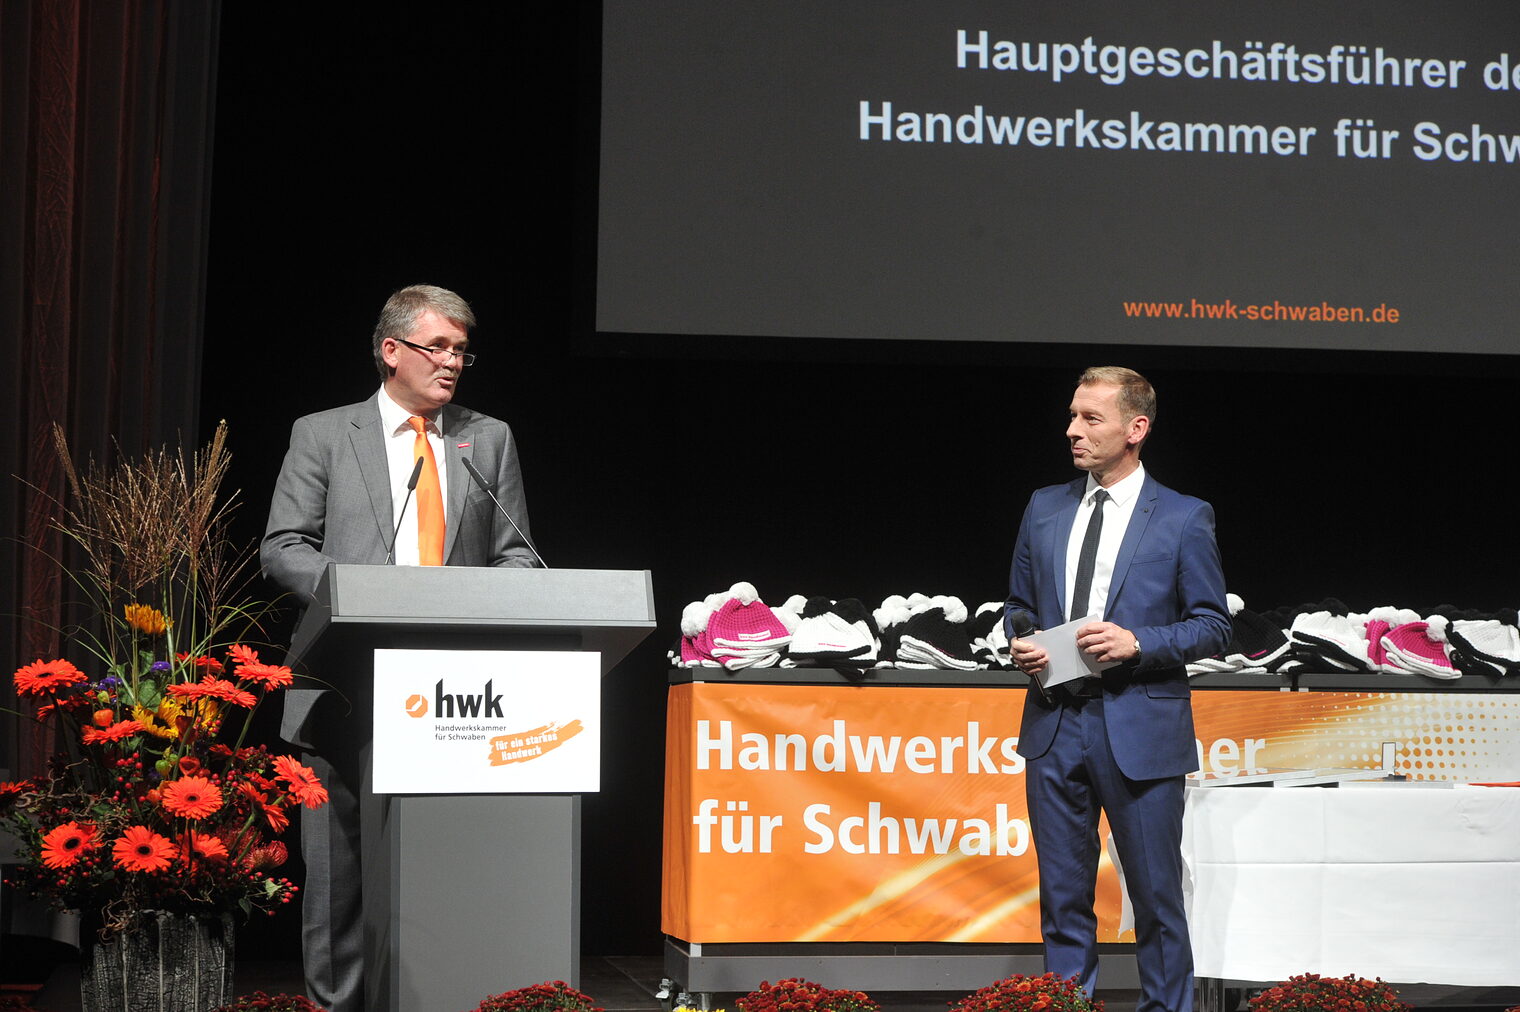 Feierliche Ansprache von HWK-Hauptgeschäftsführer Ulrich Wagner